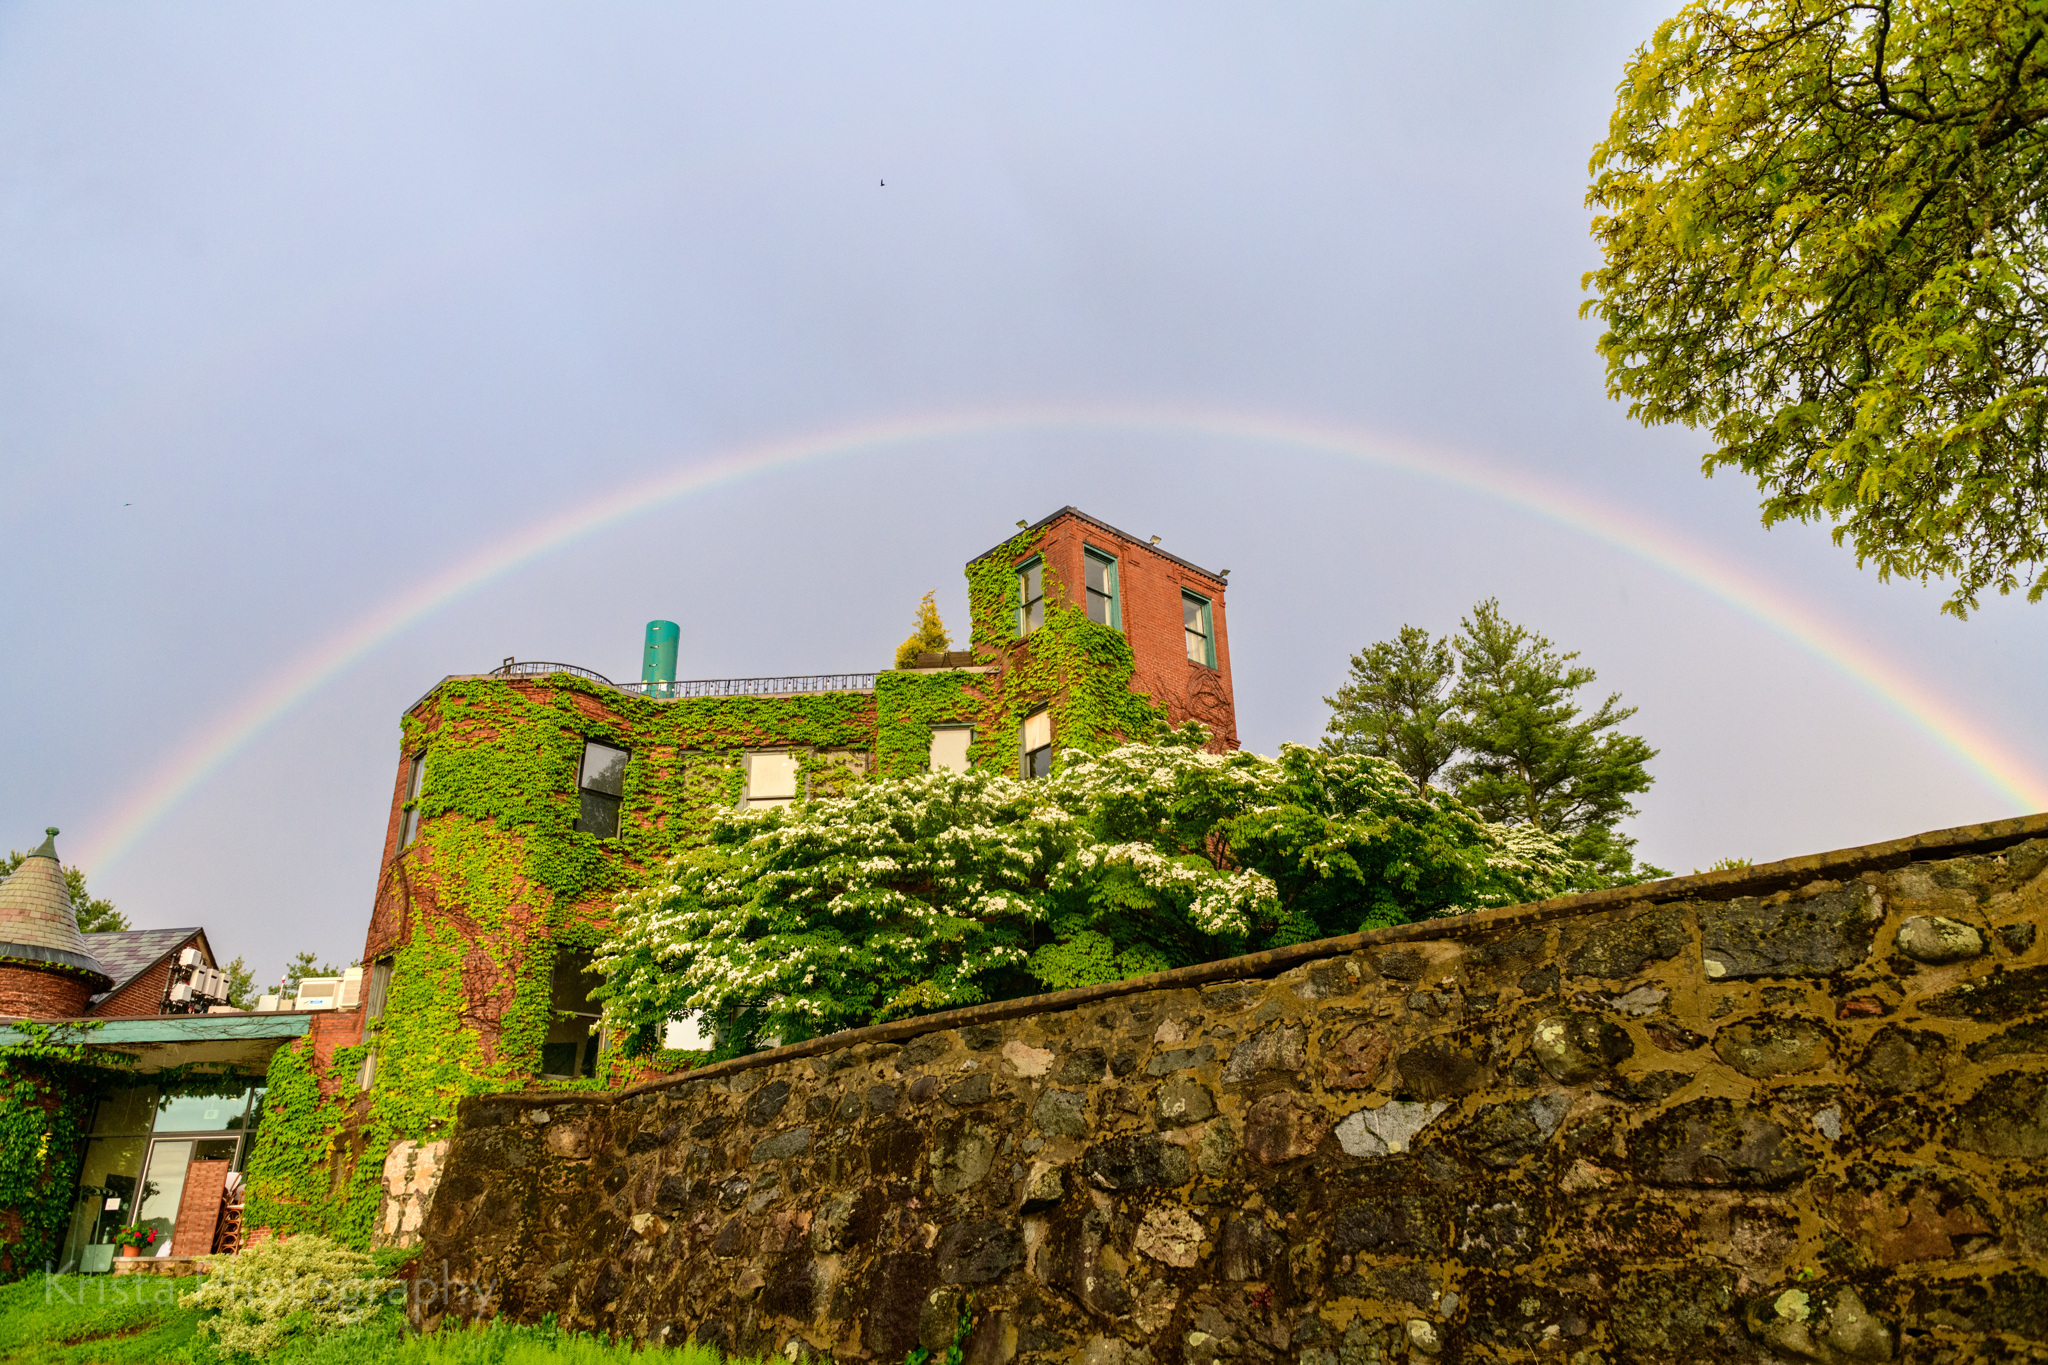 a rainbow over a brick building